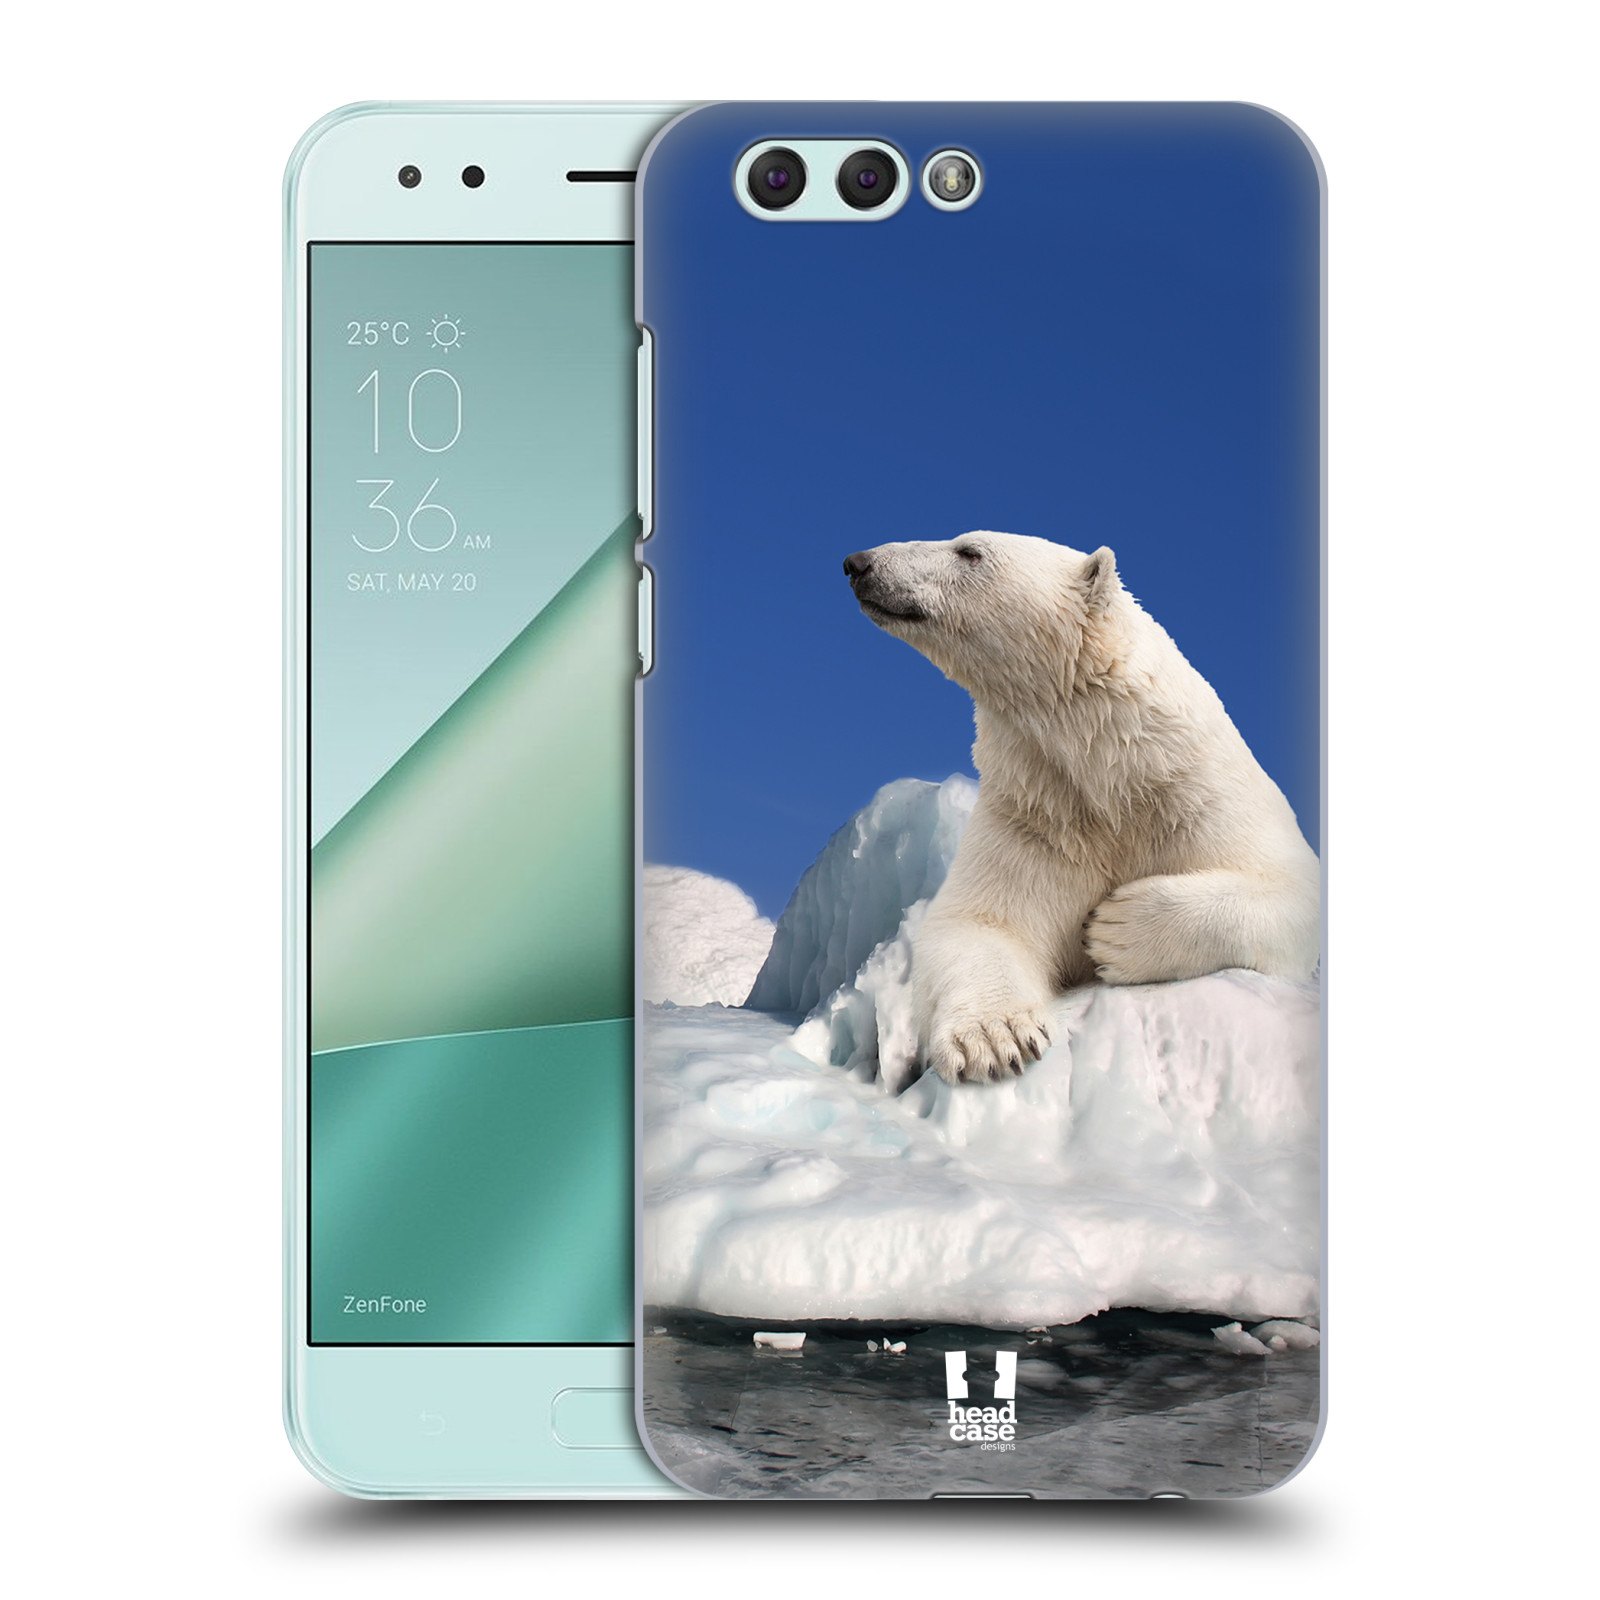 HEAD CASE plastový obal na mobil Asus Zenfone 4 ZE554KL vzor Divočina, Divoký život a zvířata foto LEDNÍ MEDVĚD NA LEDOVCI A NEBE MODRÁ